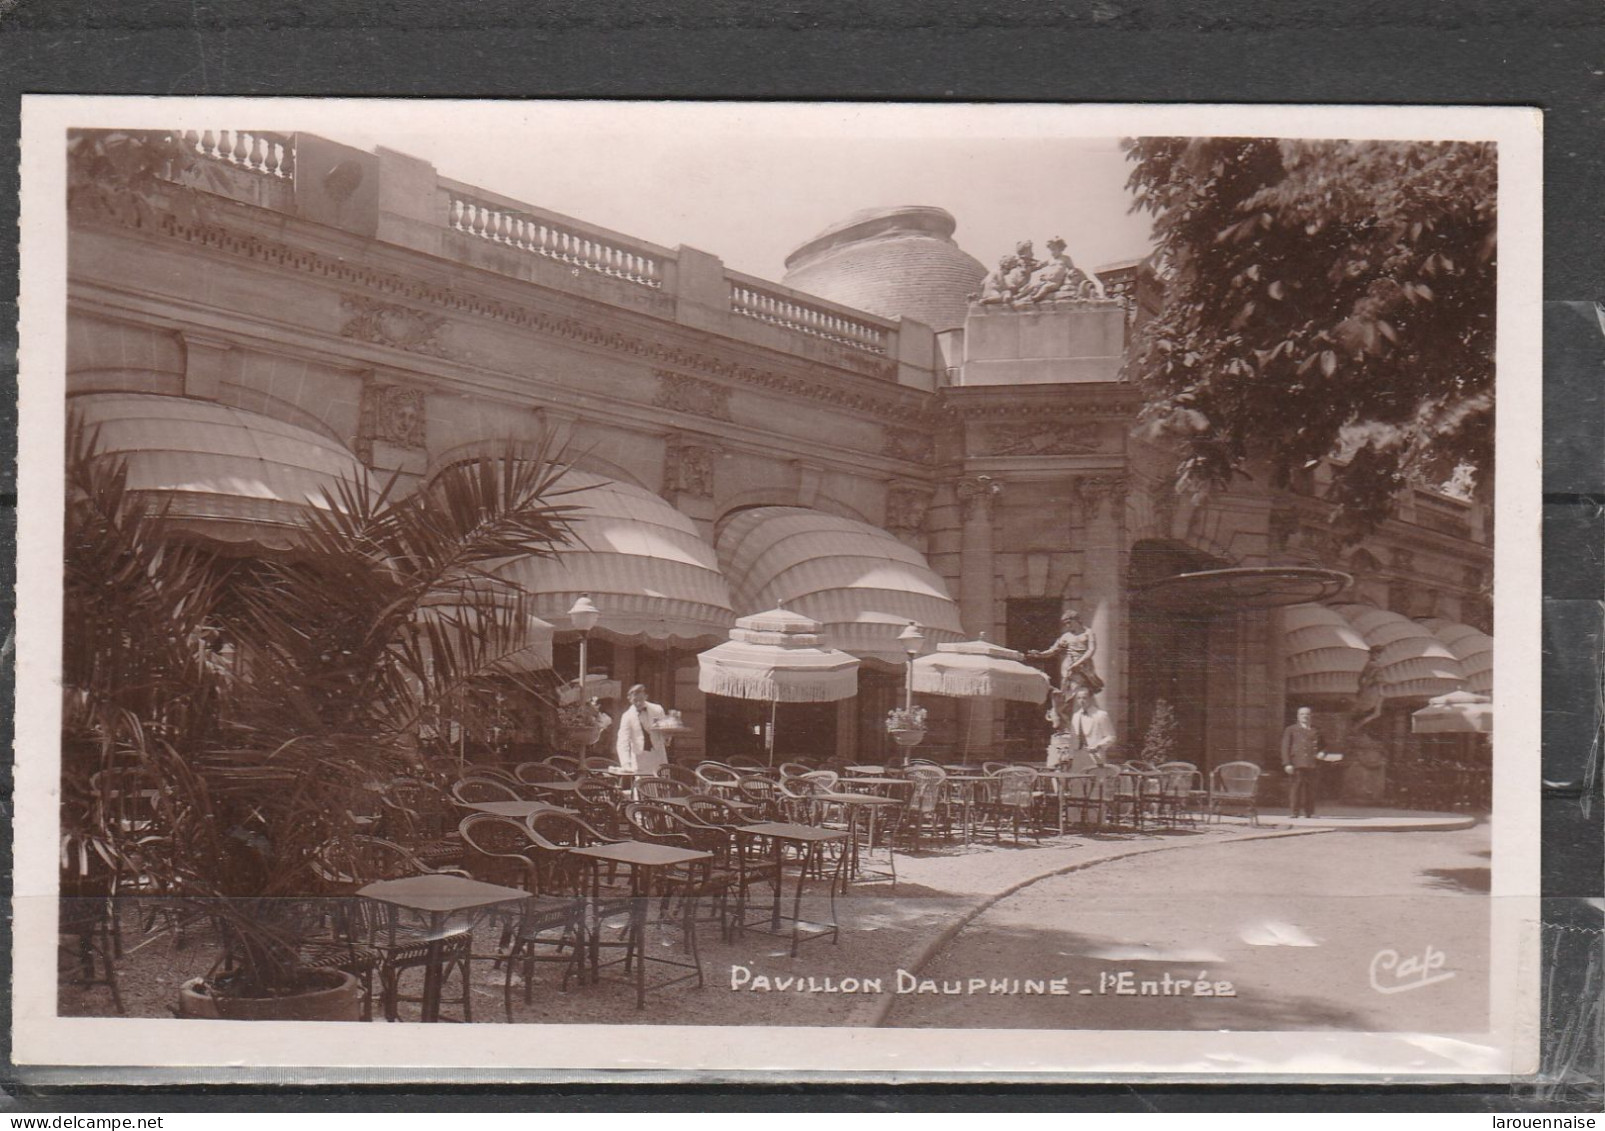 75016 - PARIS - Pavillon Dauphine - L' Entrée - Cafés, Hotels, Restaurants